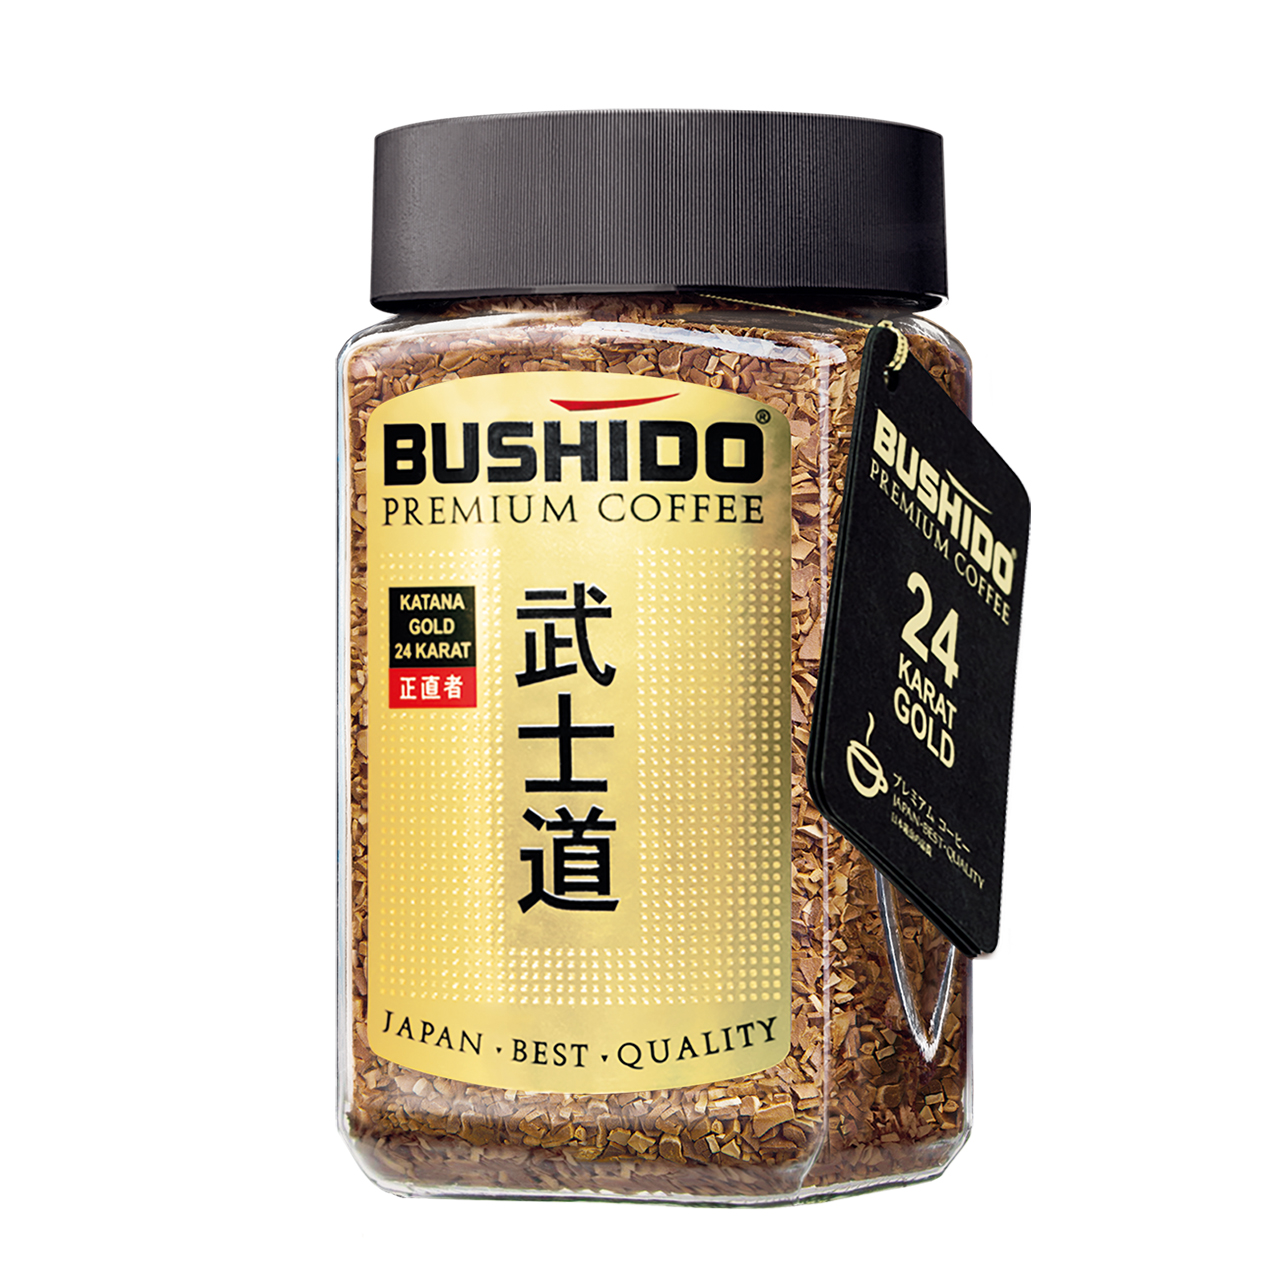 Кофе BUSHIDO Katana Gold 24 Karat сублимированный 100г.